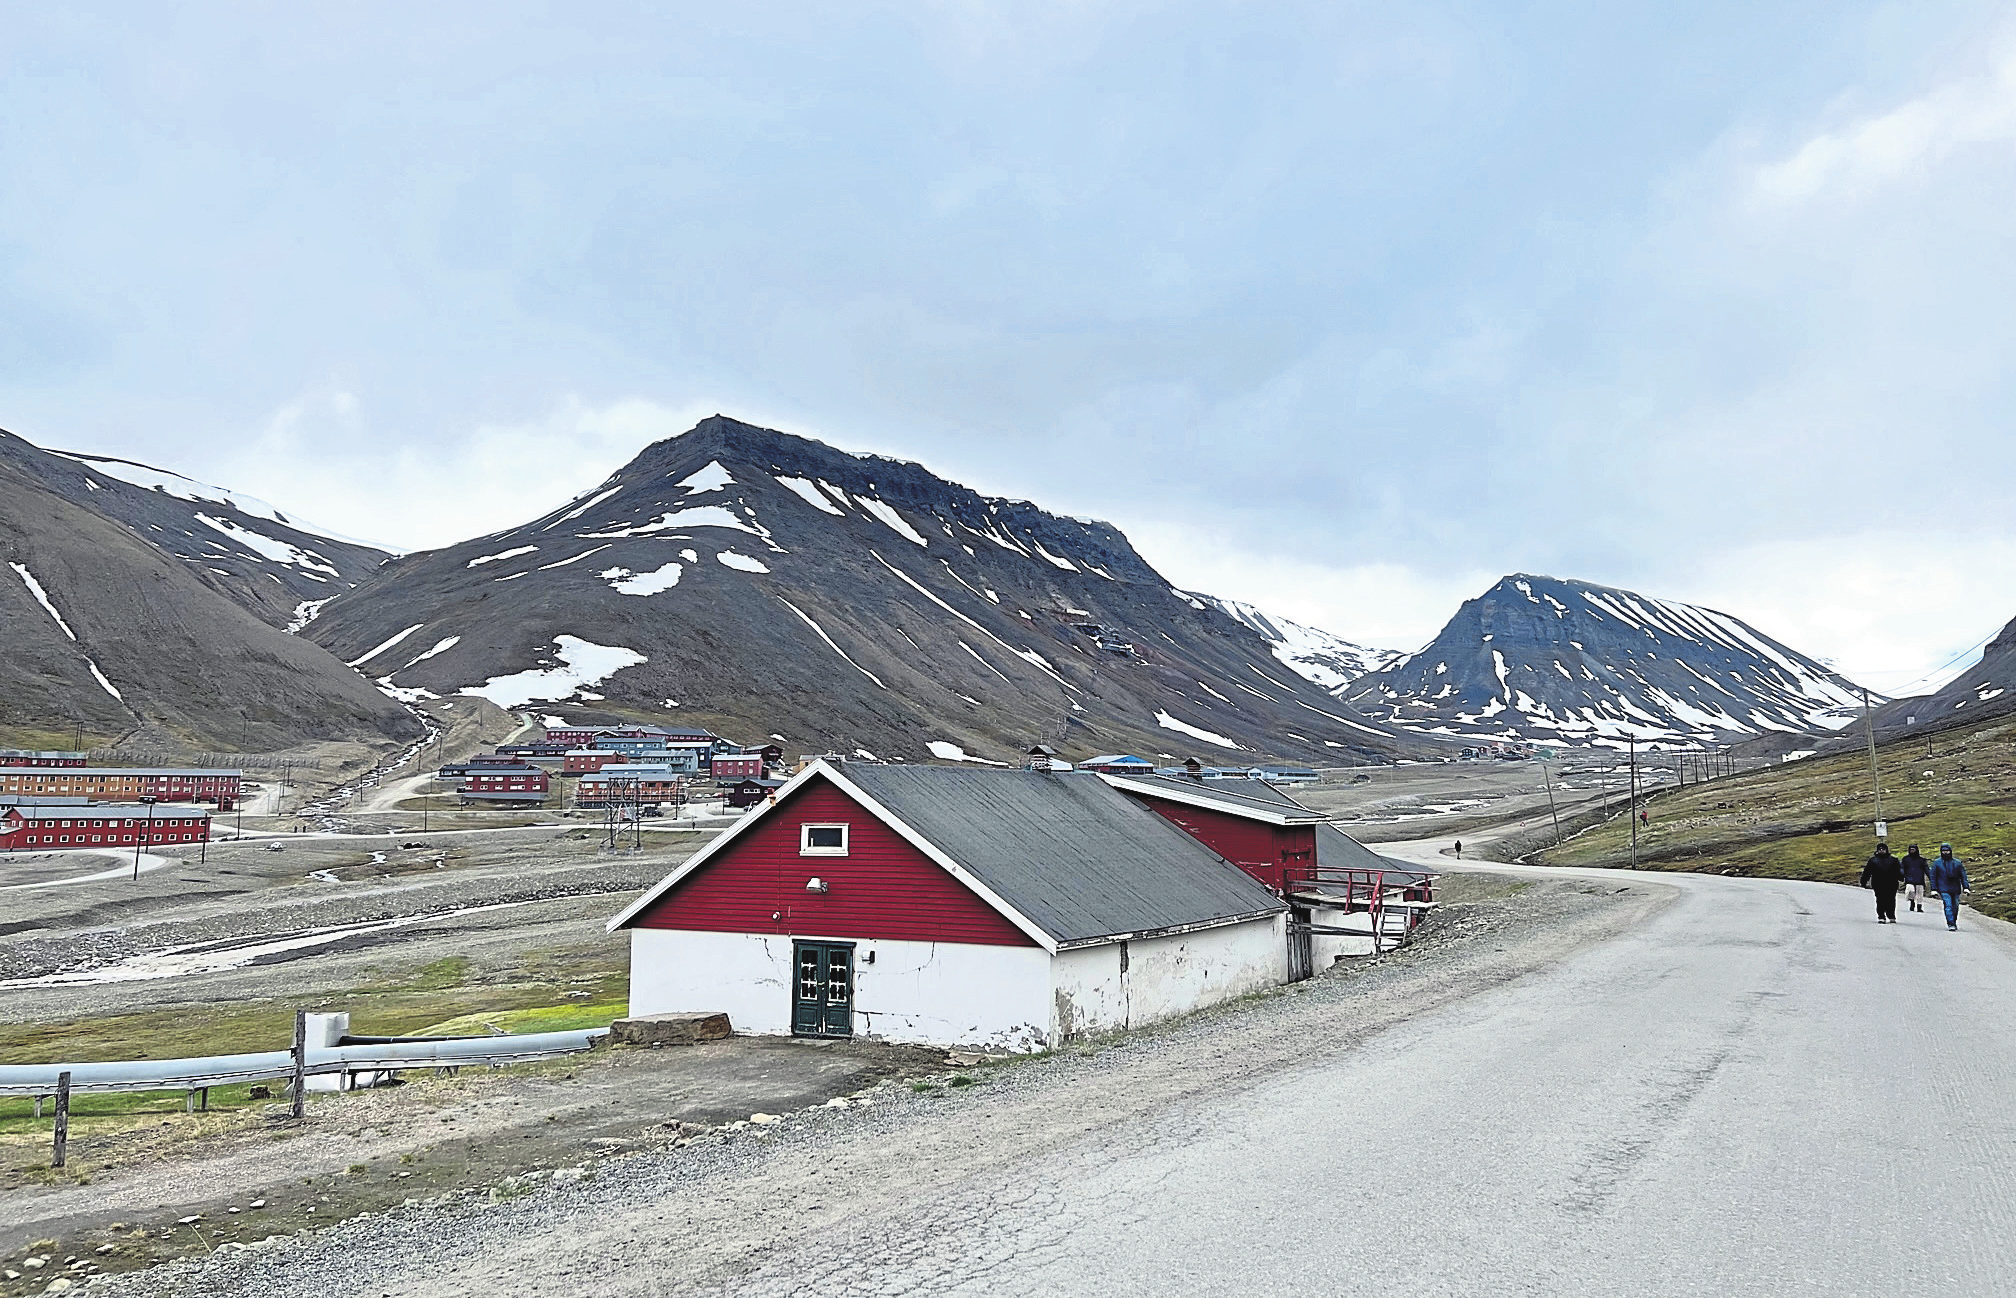 Viel weiter nördlich geht es hier nicht: der Besuch Svalbards war ein echter Höhepunkt der Reise.